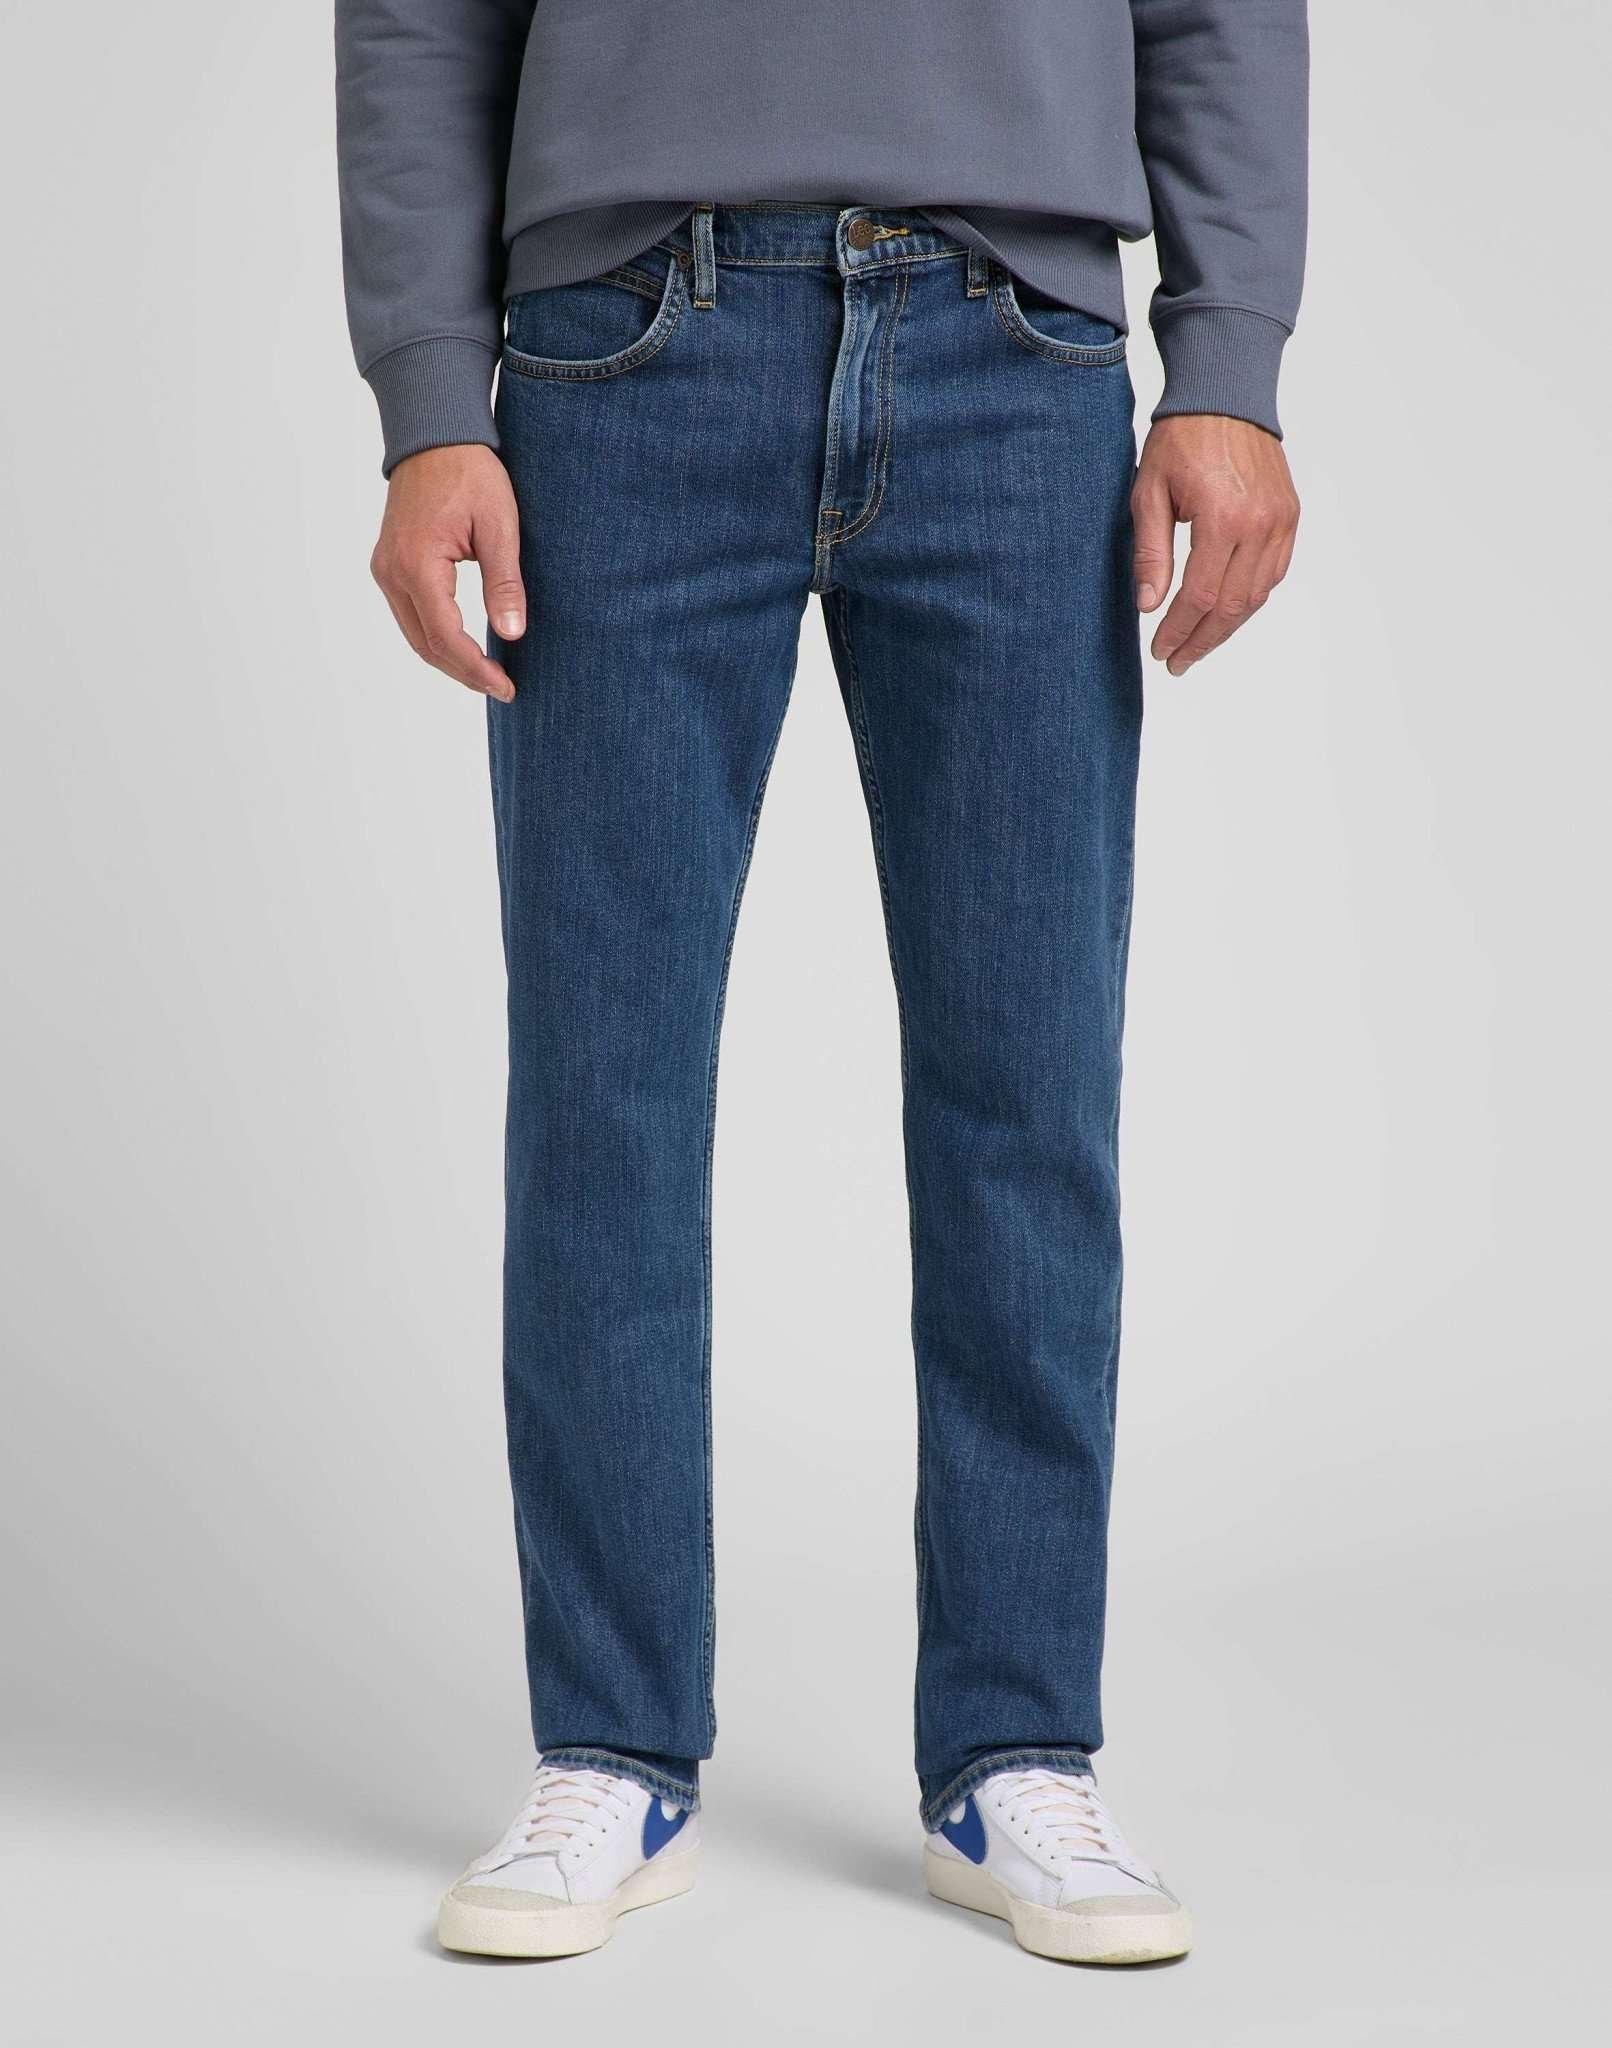 Jeans Straight Leg Brooklyn Herren Blau Denim L34/W36 von Lee